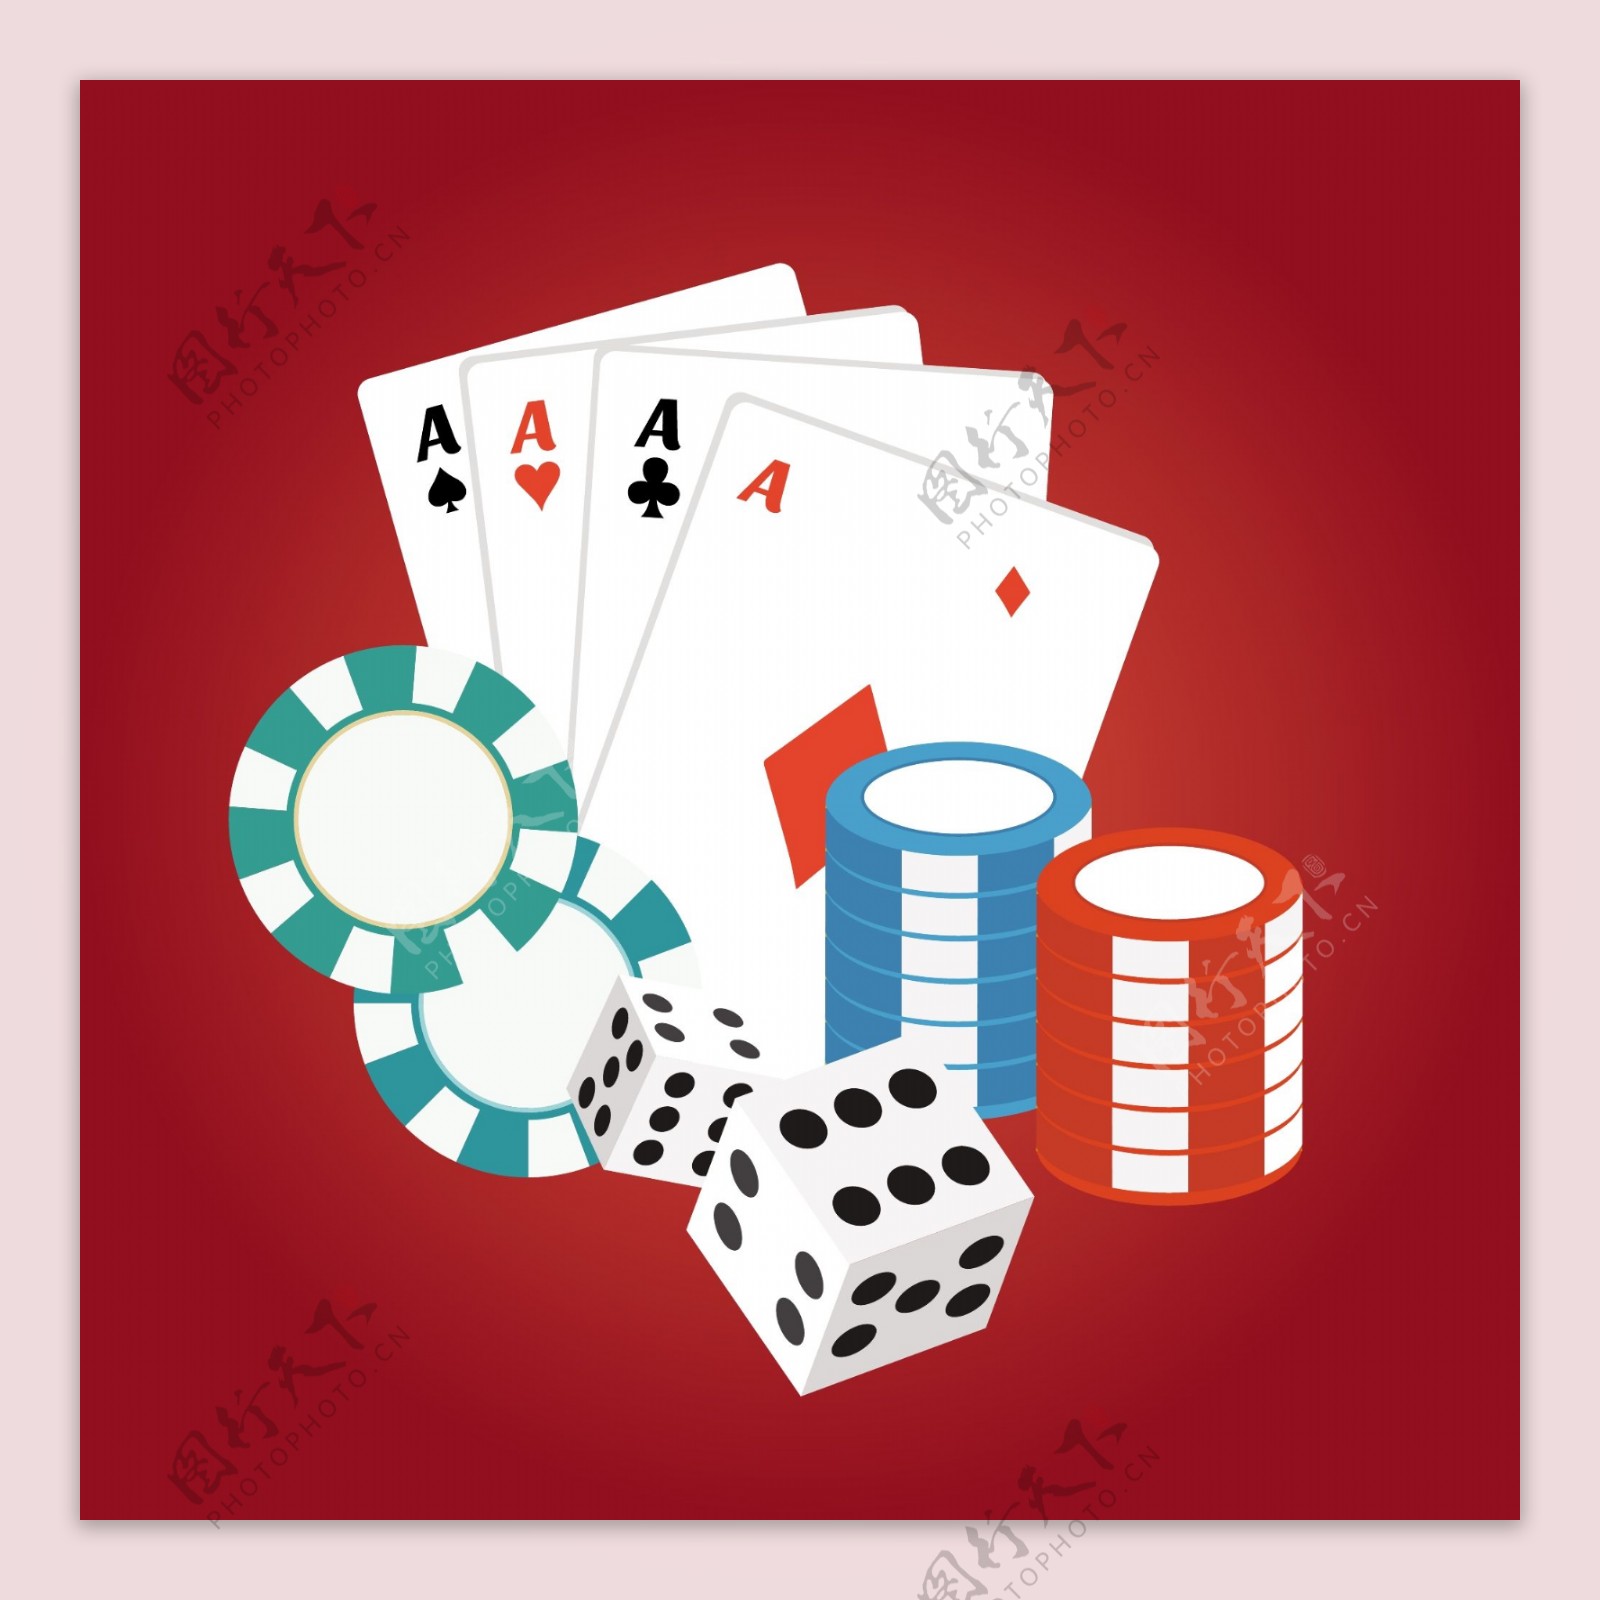 红色背景下的赌场卡和筹码